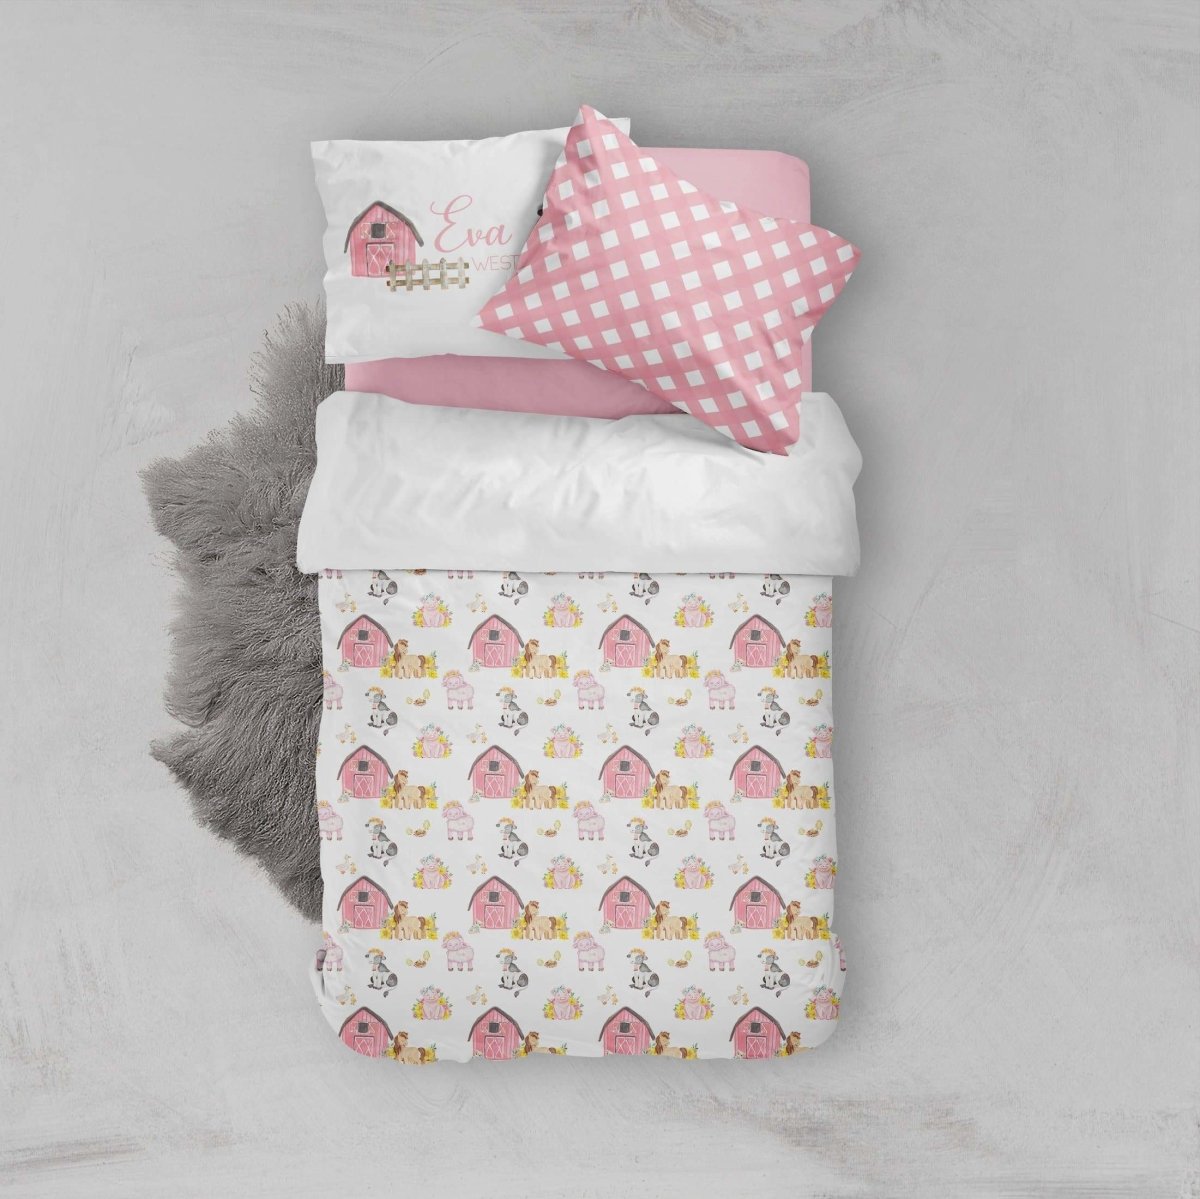 Farm Girl Kids Bedding Set (Comforter or Duvet Cover) - Farm Girl, gender_girl, text